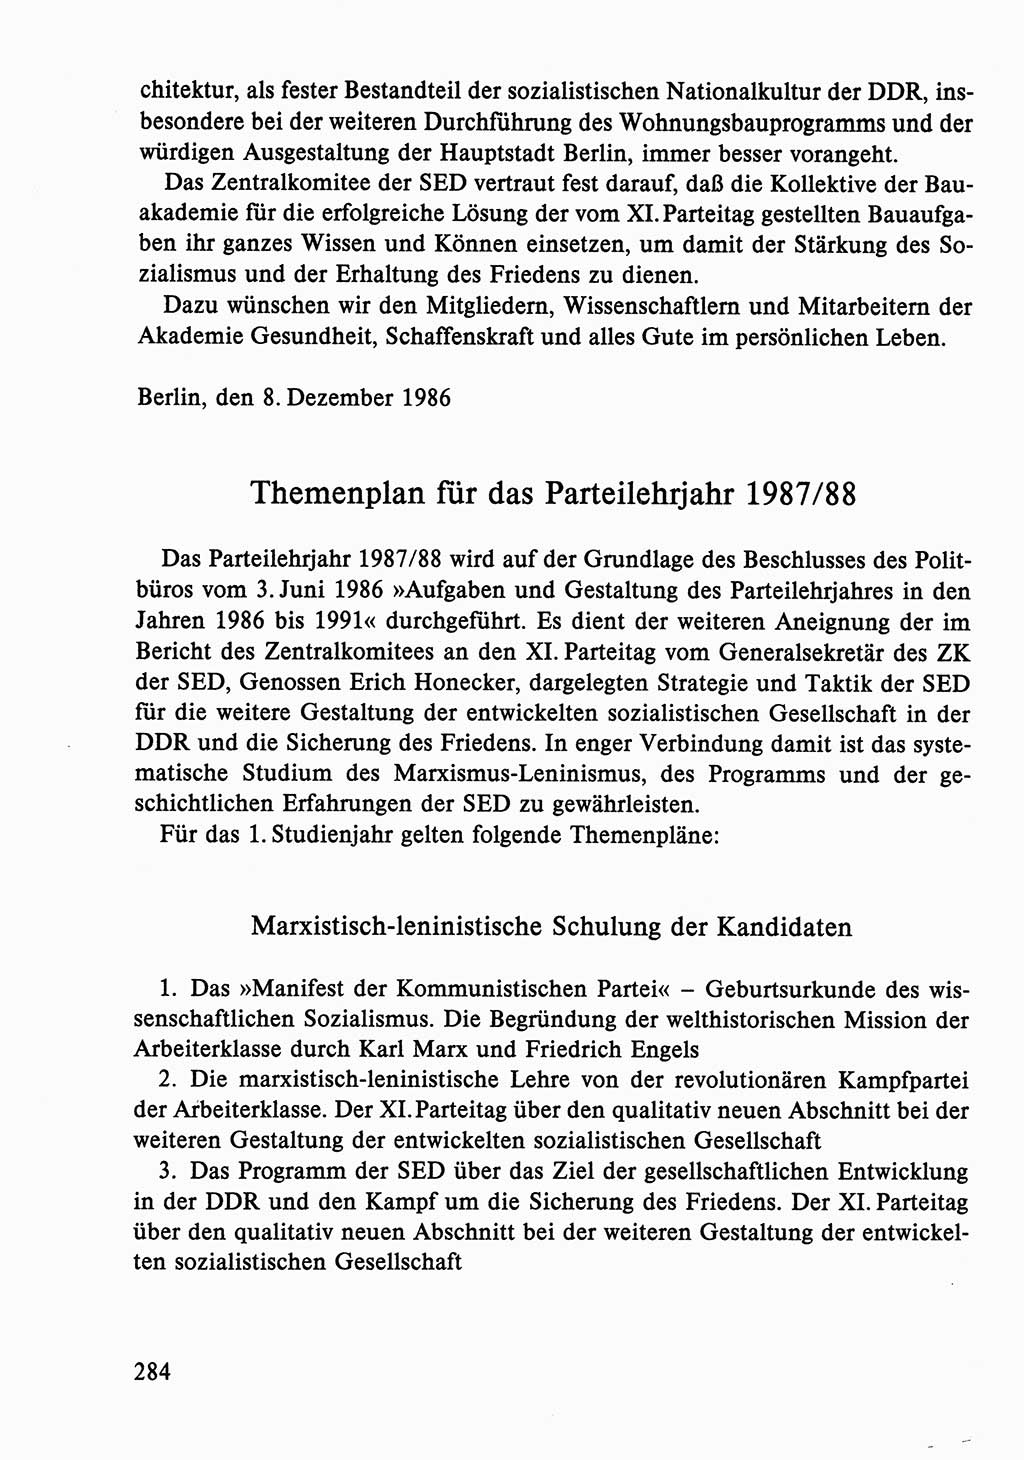 Dokumente der Sozialistischen Einheitspartei Deutschlands (SED) [Deutsche Demokratische Republik (DDR)] 1986-1987, Seite 284 (Dok. SED DDR 1986-1987, S. 284)